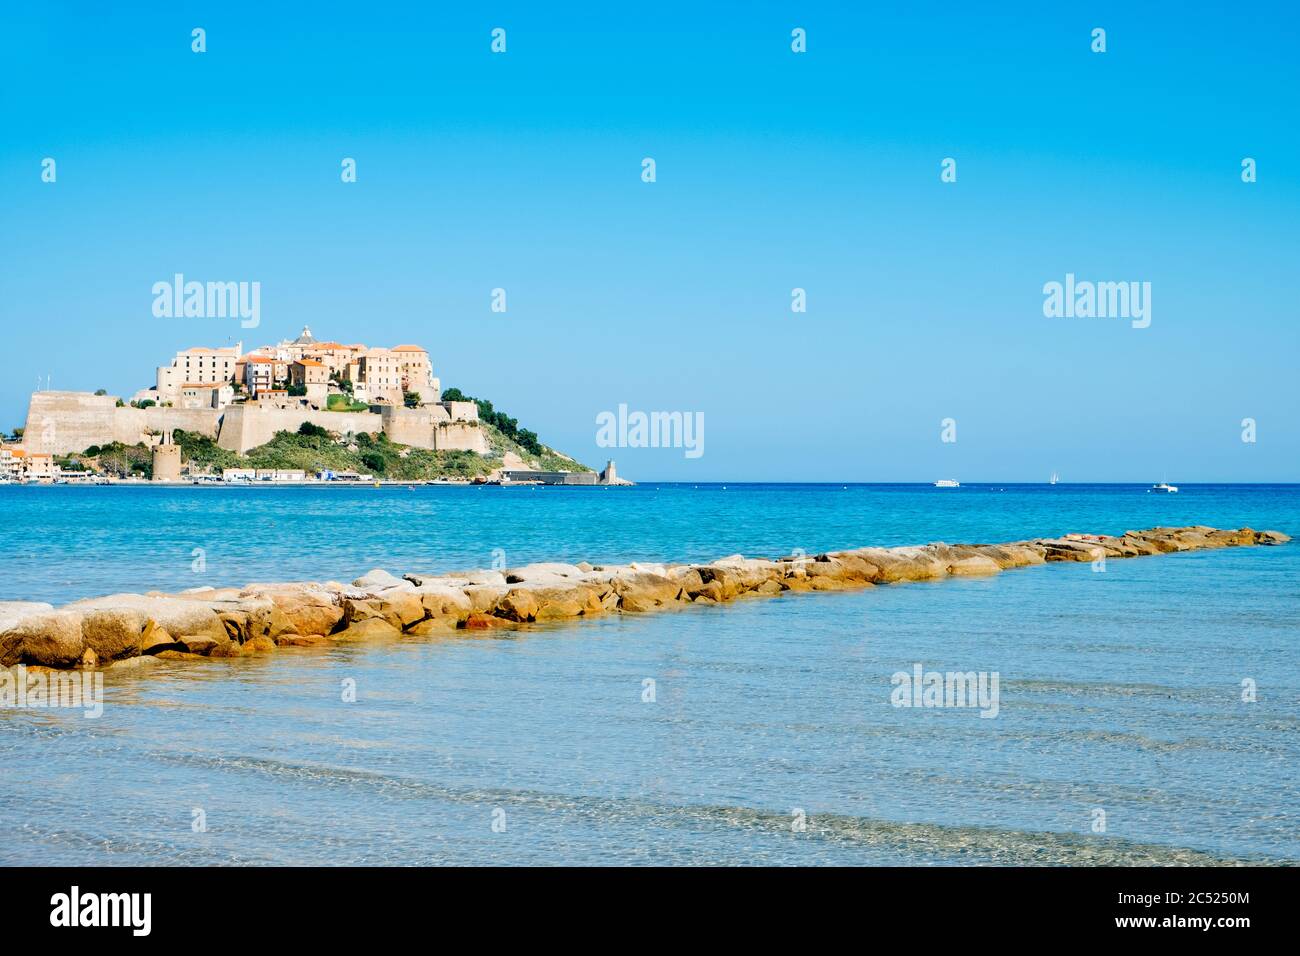 Una vista di Calvi, in Corsica, Francia, con la sua famosa cittadella sul rigth sulla cima di un promontorio, e il mare Mediterraneo in primo piano Foto Stock